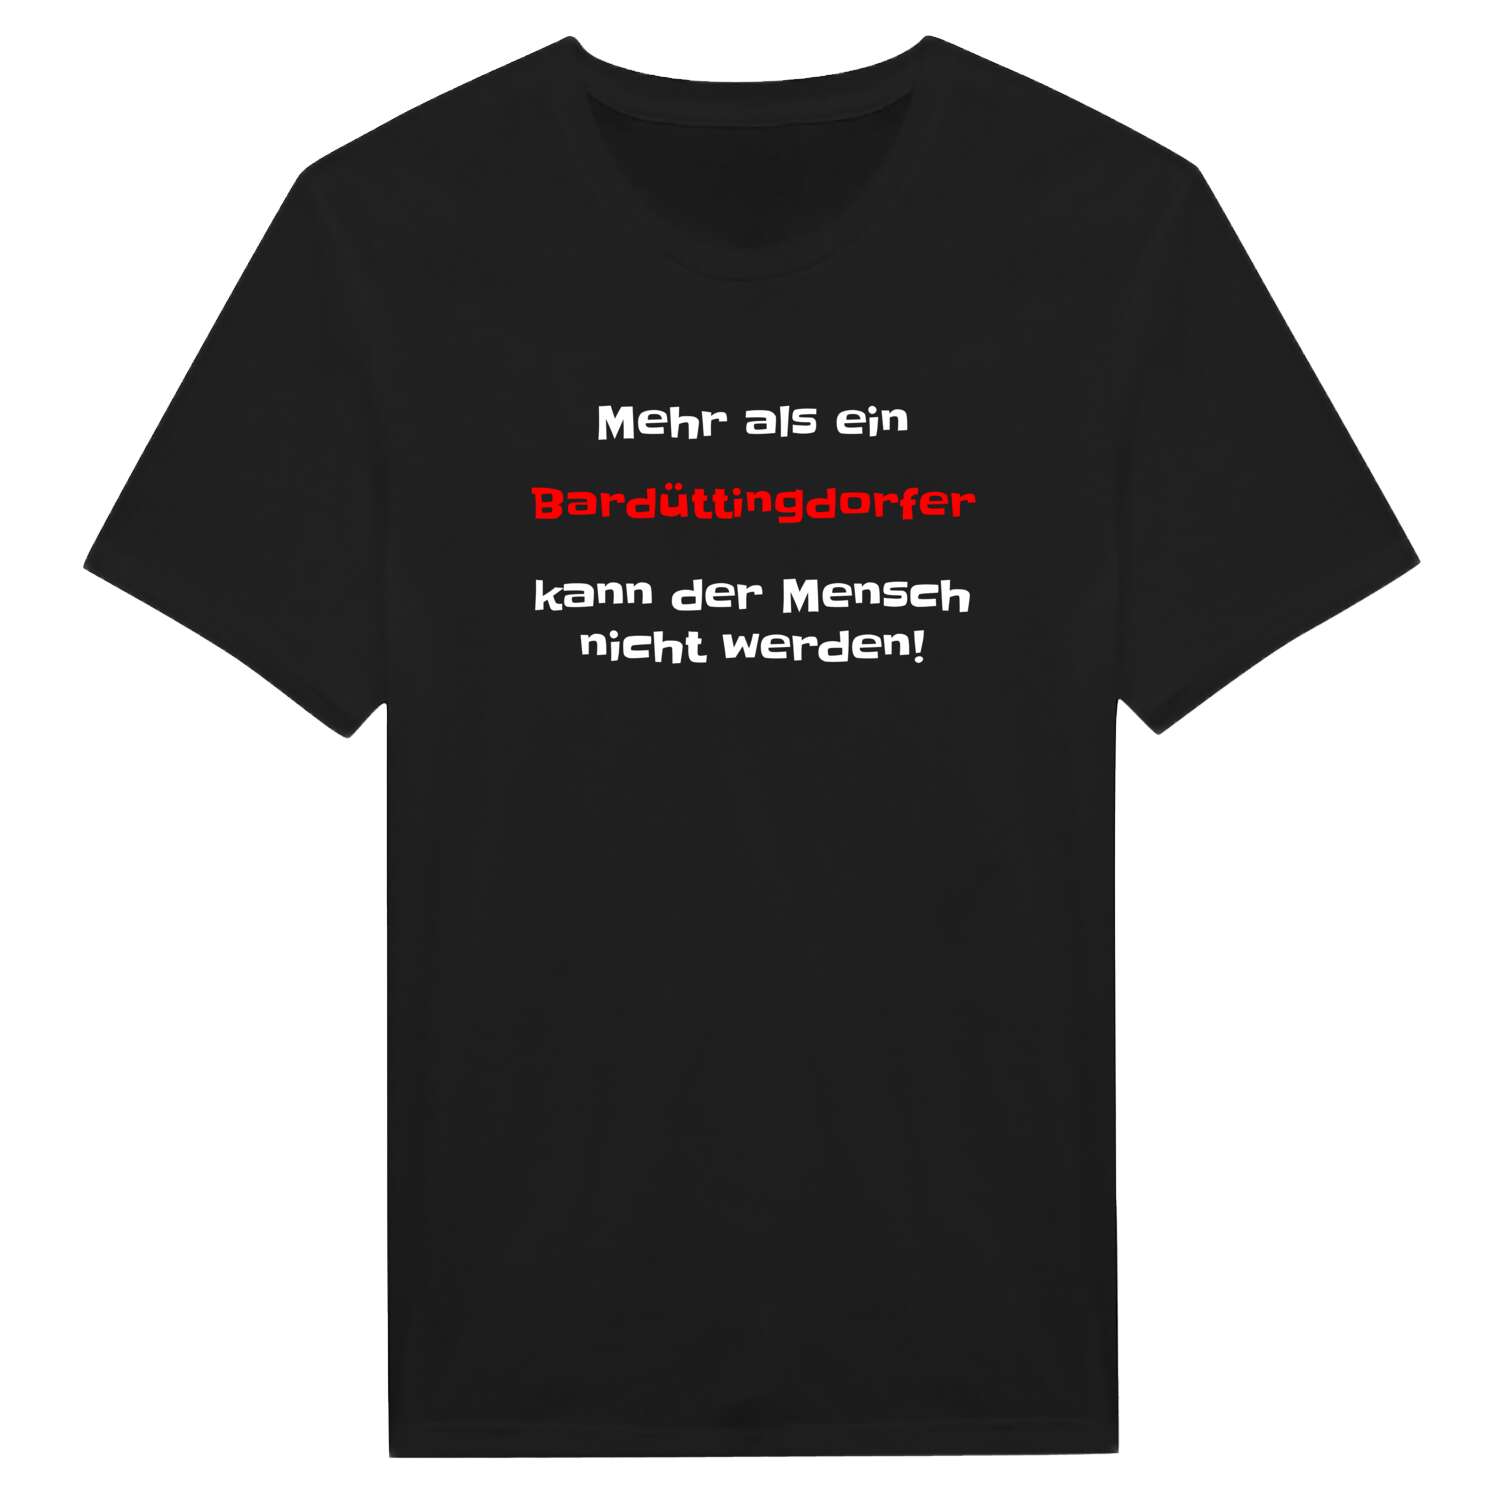 Bardüttingdorf T-Shirt »Mehr als ein«